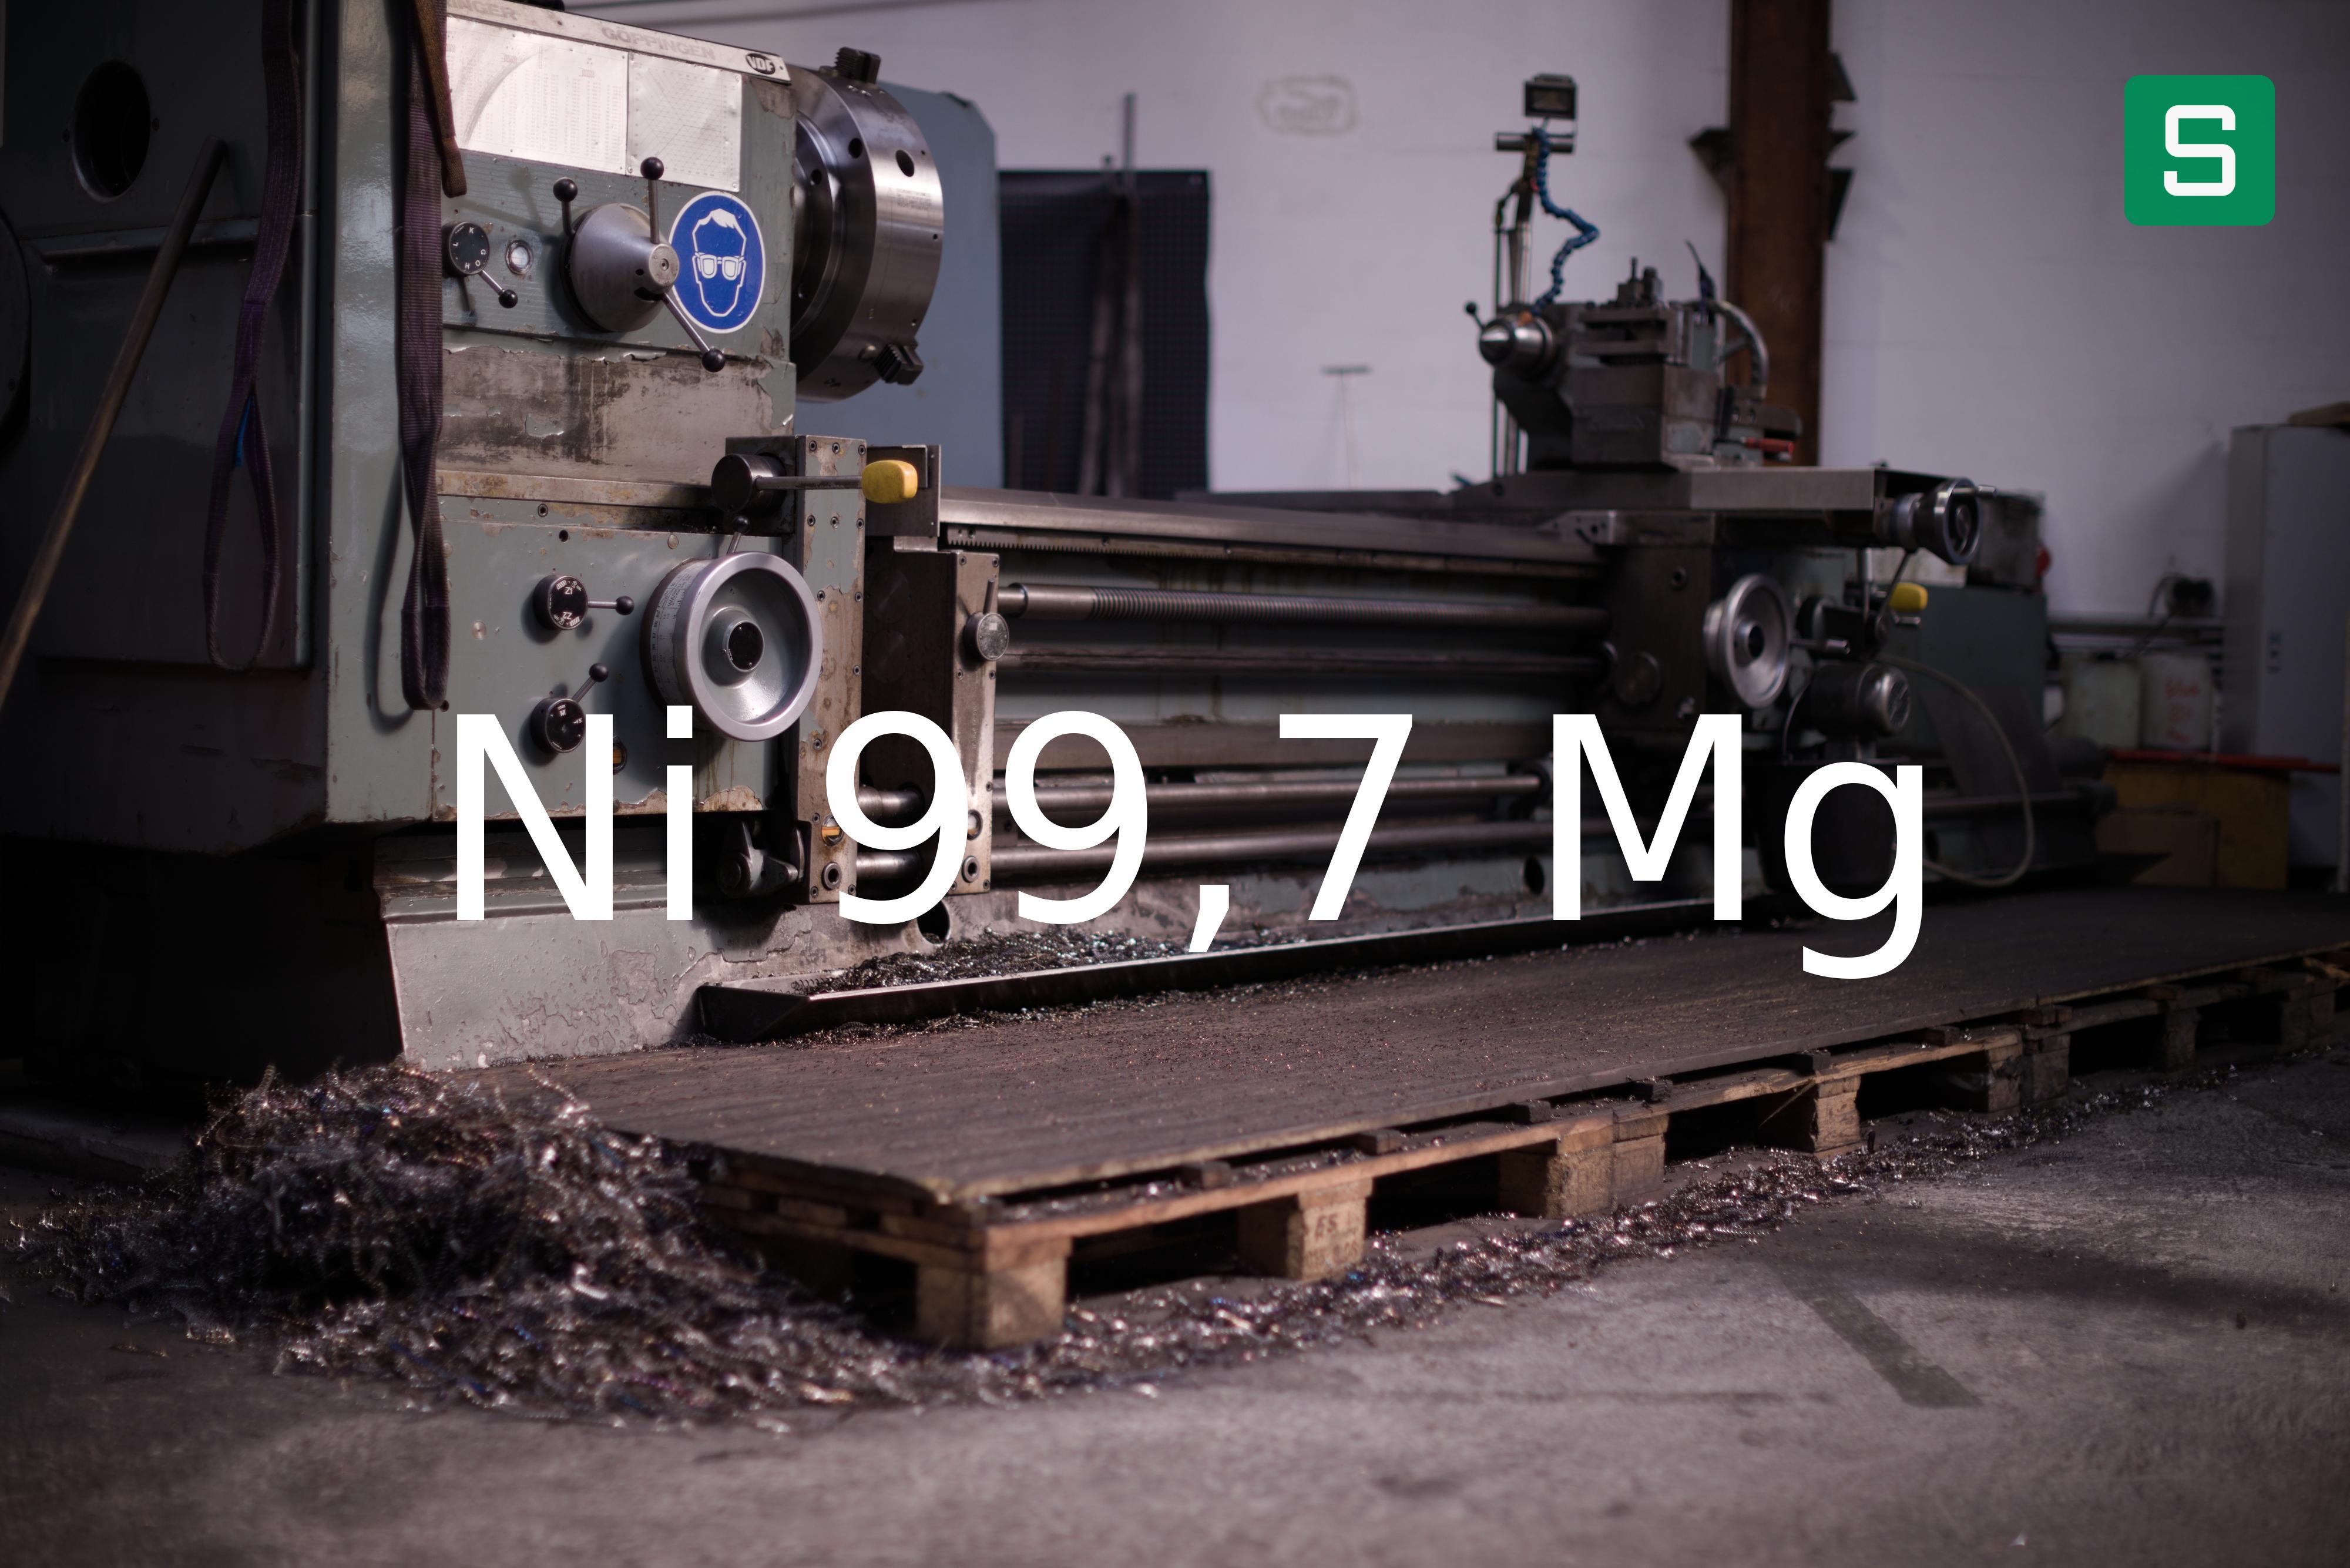 Steel Material: Ni 99,7 Mg